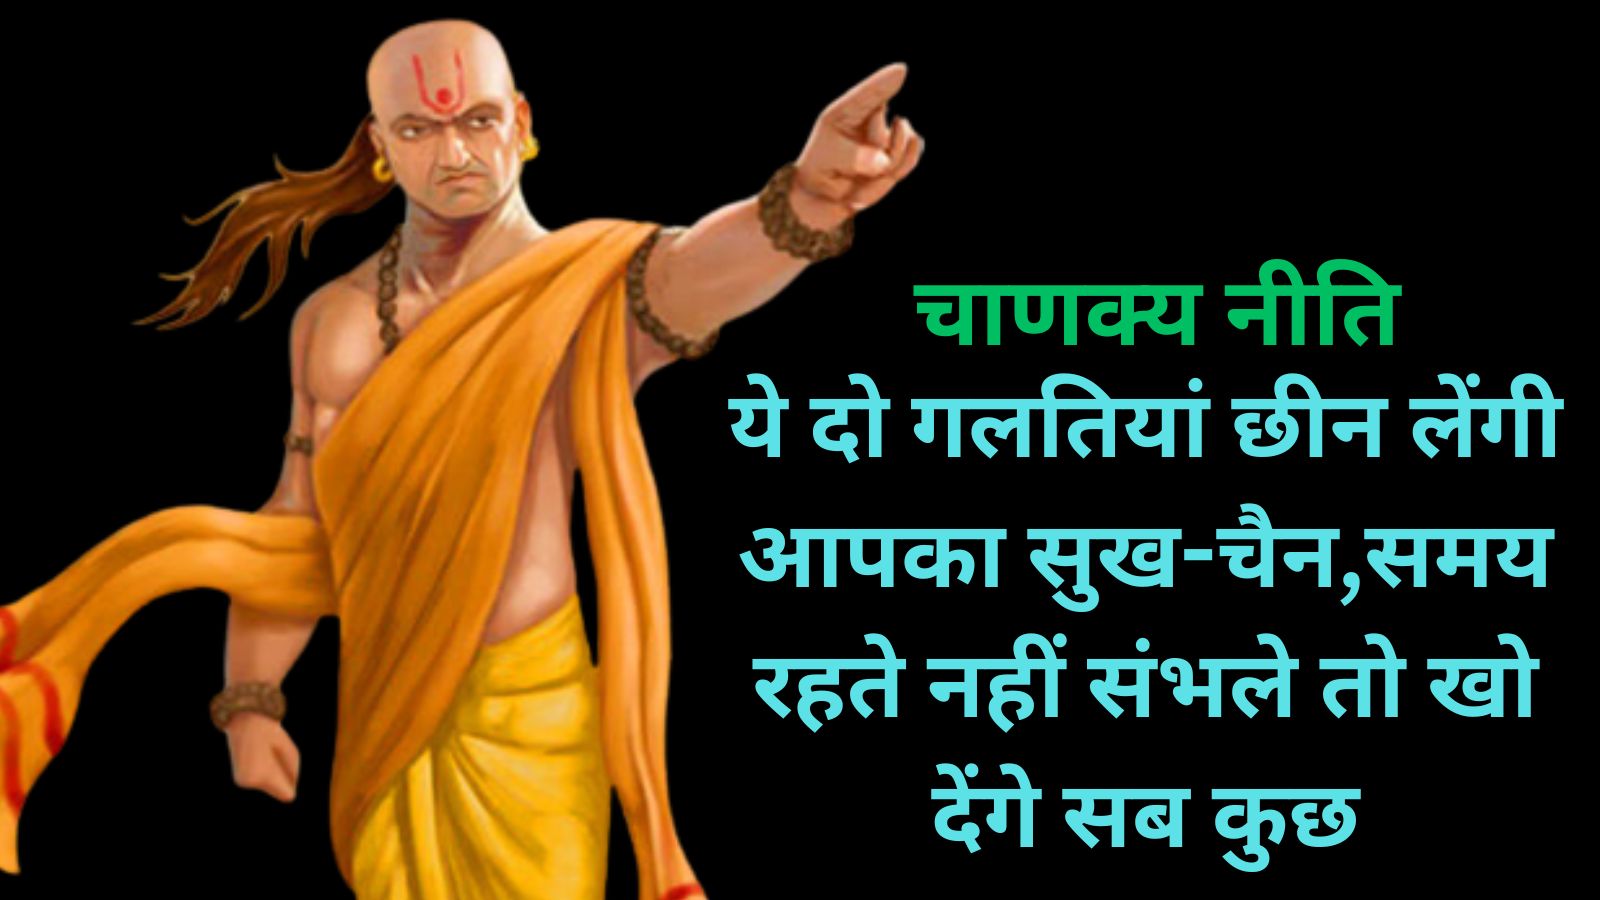 Chanakya Niti:ये दो गलतियां छीन लेंगी आपका सुख-चैन,समय रहते नहीं संभले तो खो देंगे सब कुछ